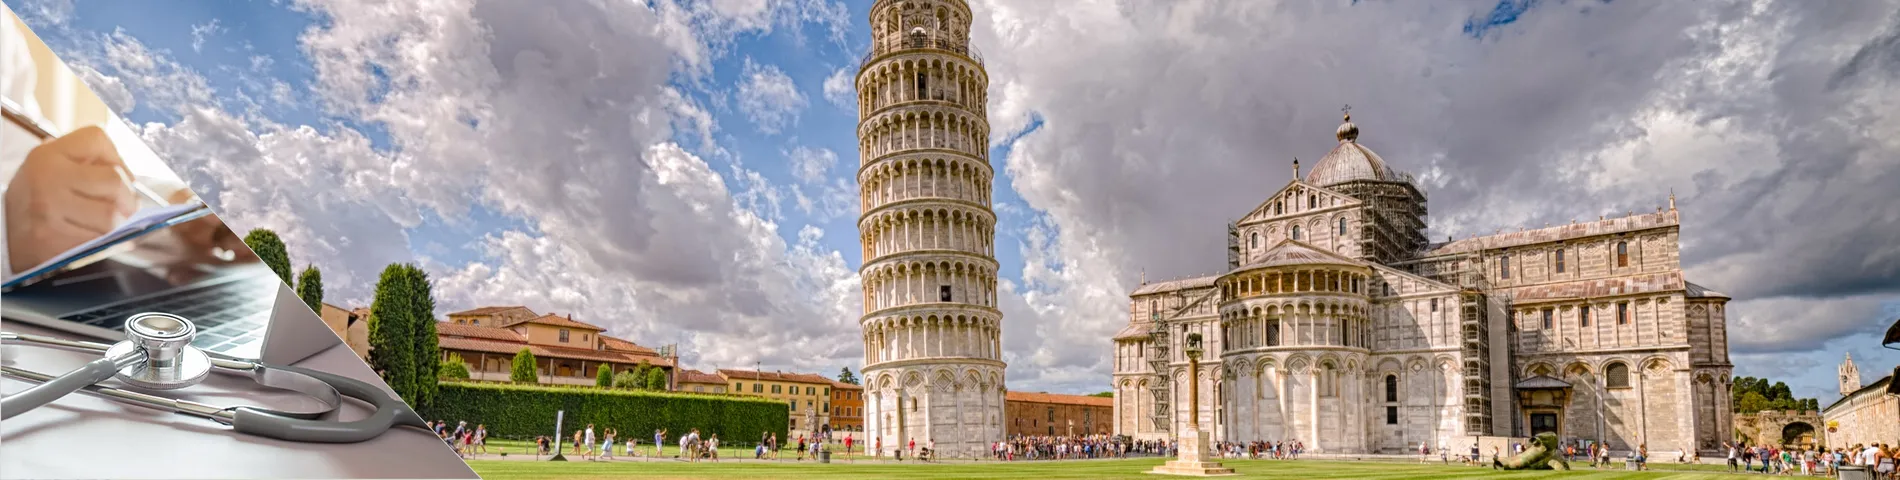 Pisa - Italienska för medicin